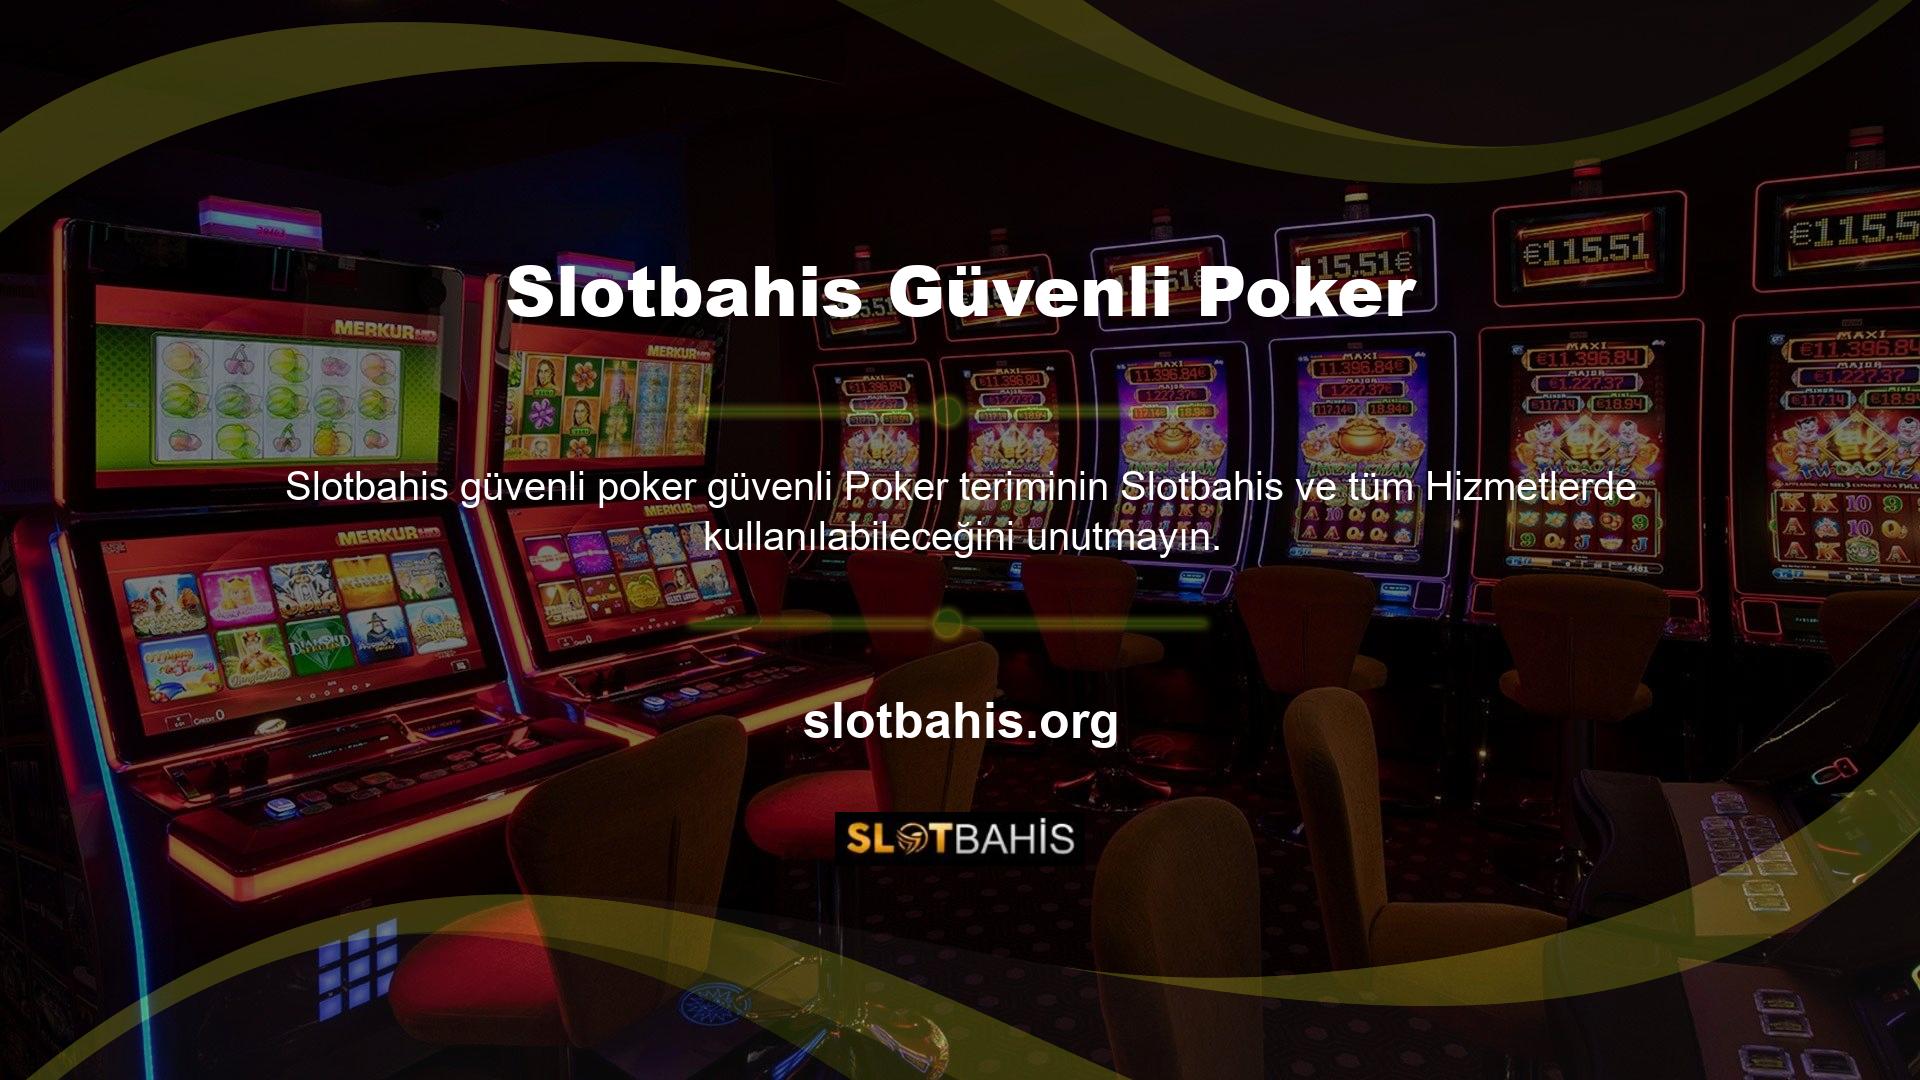 Oyun katılımcıları Slotbahis güvenli poker oynarken hile yapamazlar